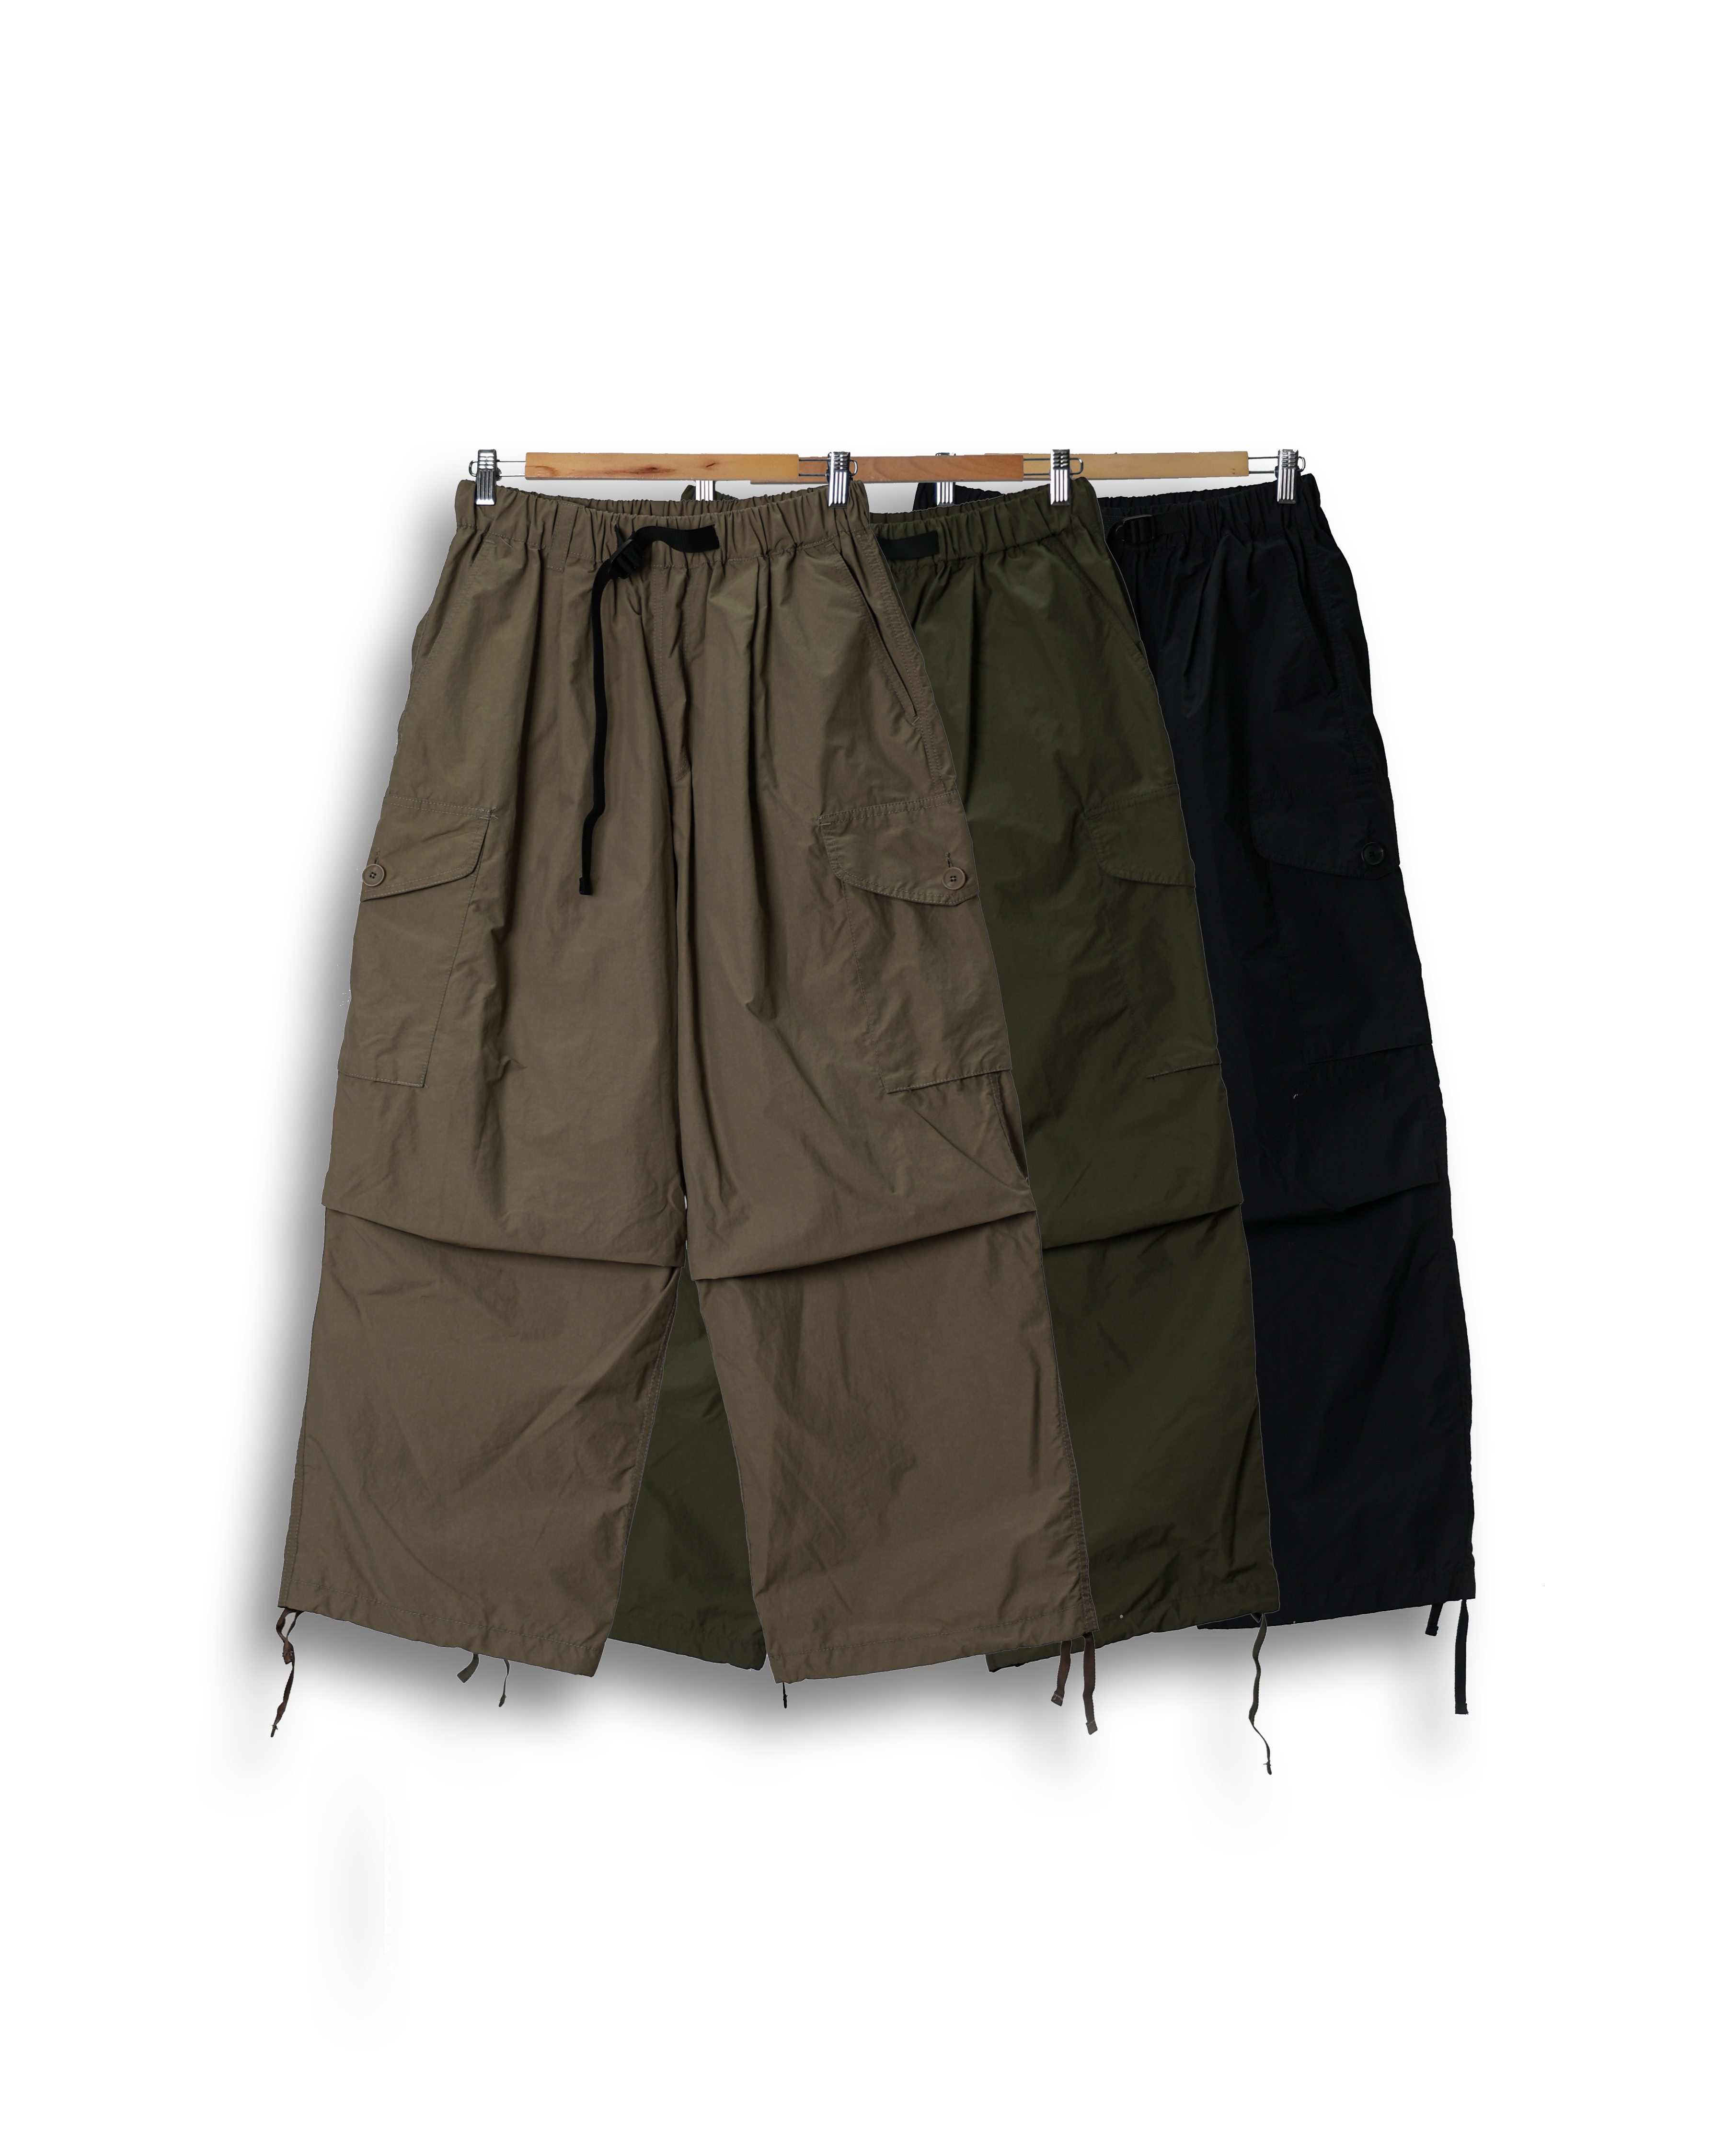 SPEC Over Weave Parachute Pocket Pants (Black/Olive/Beige)